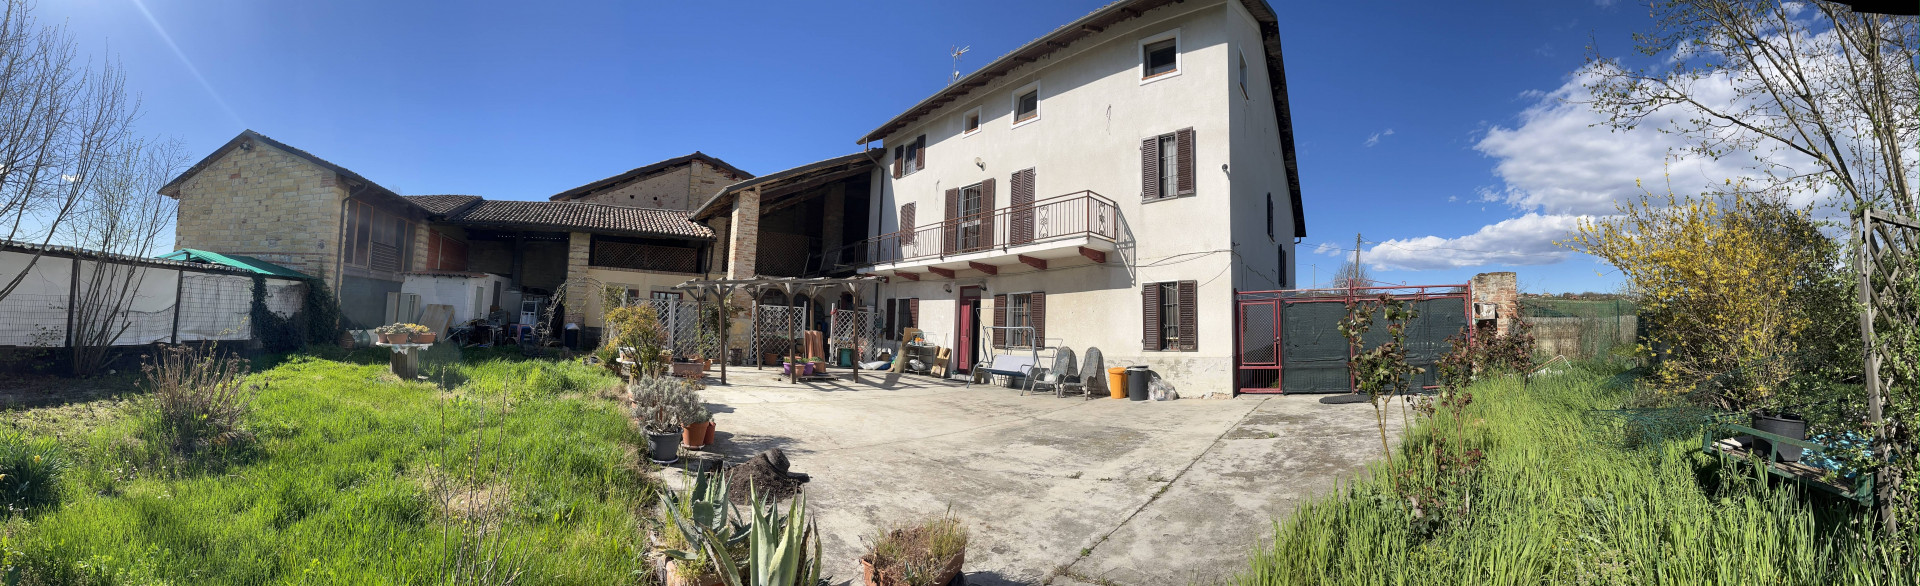 Rustico in vendita, Mombello Monferrato pozzengo